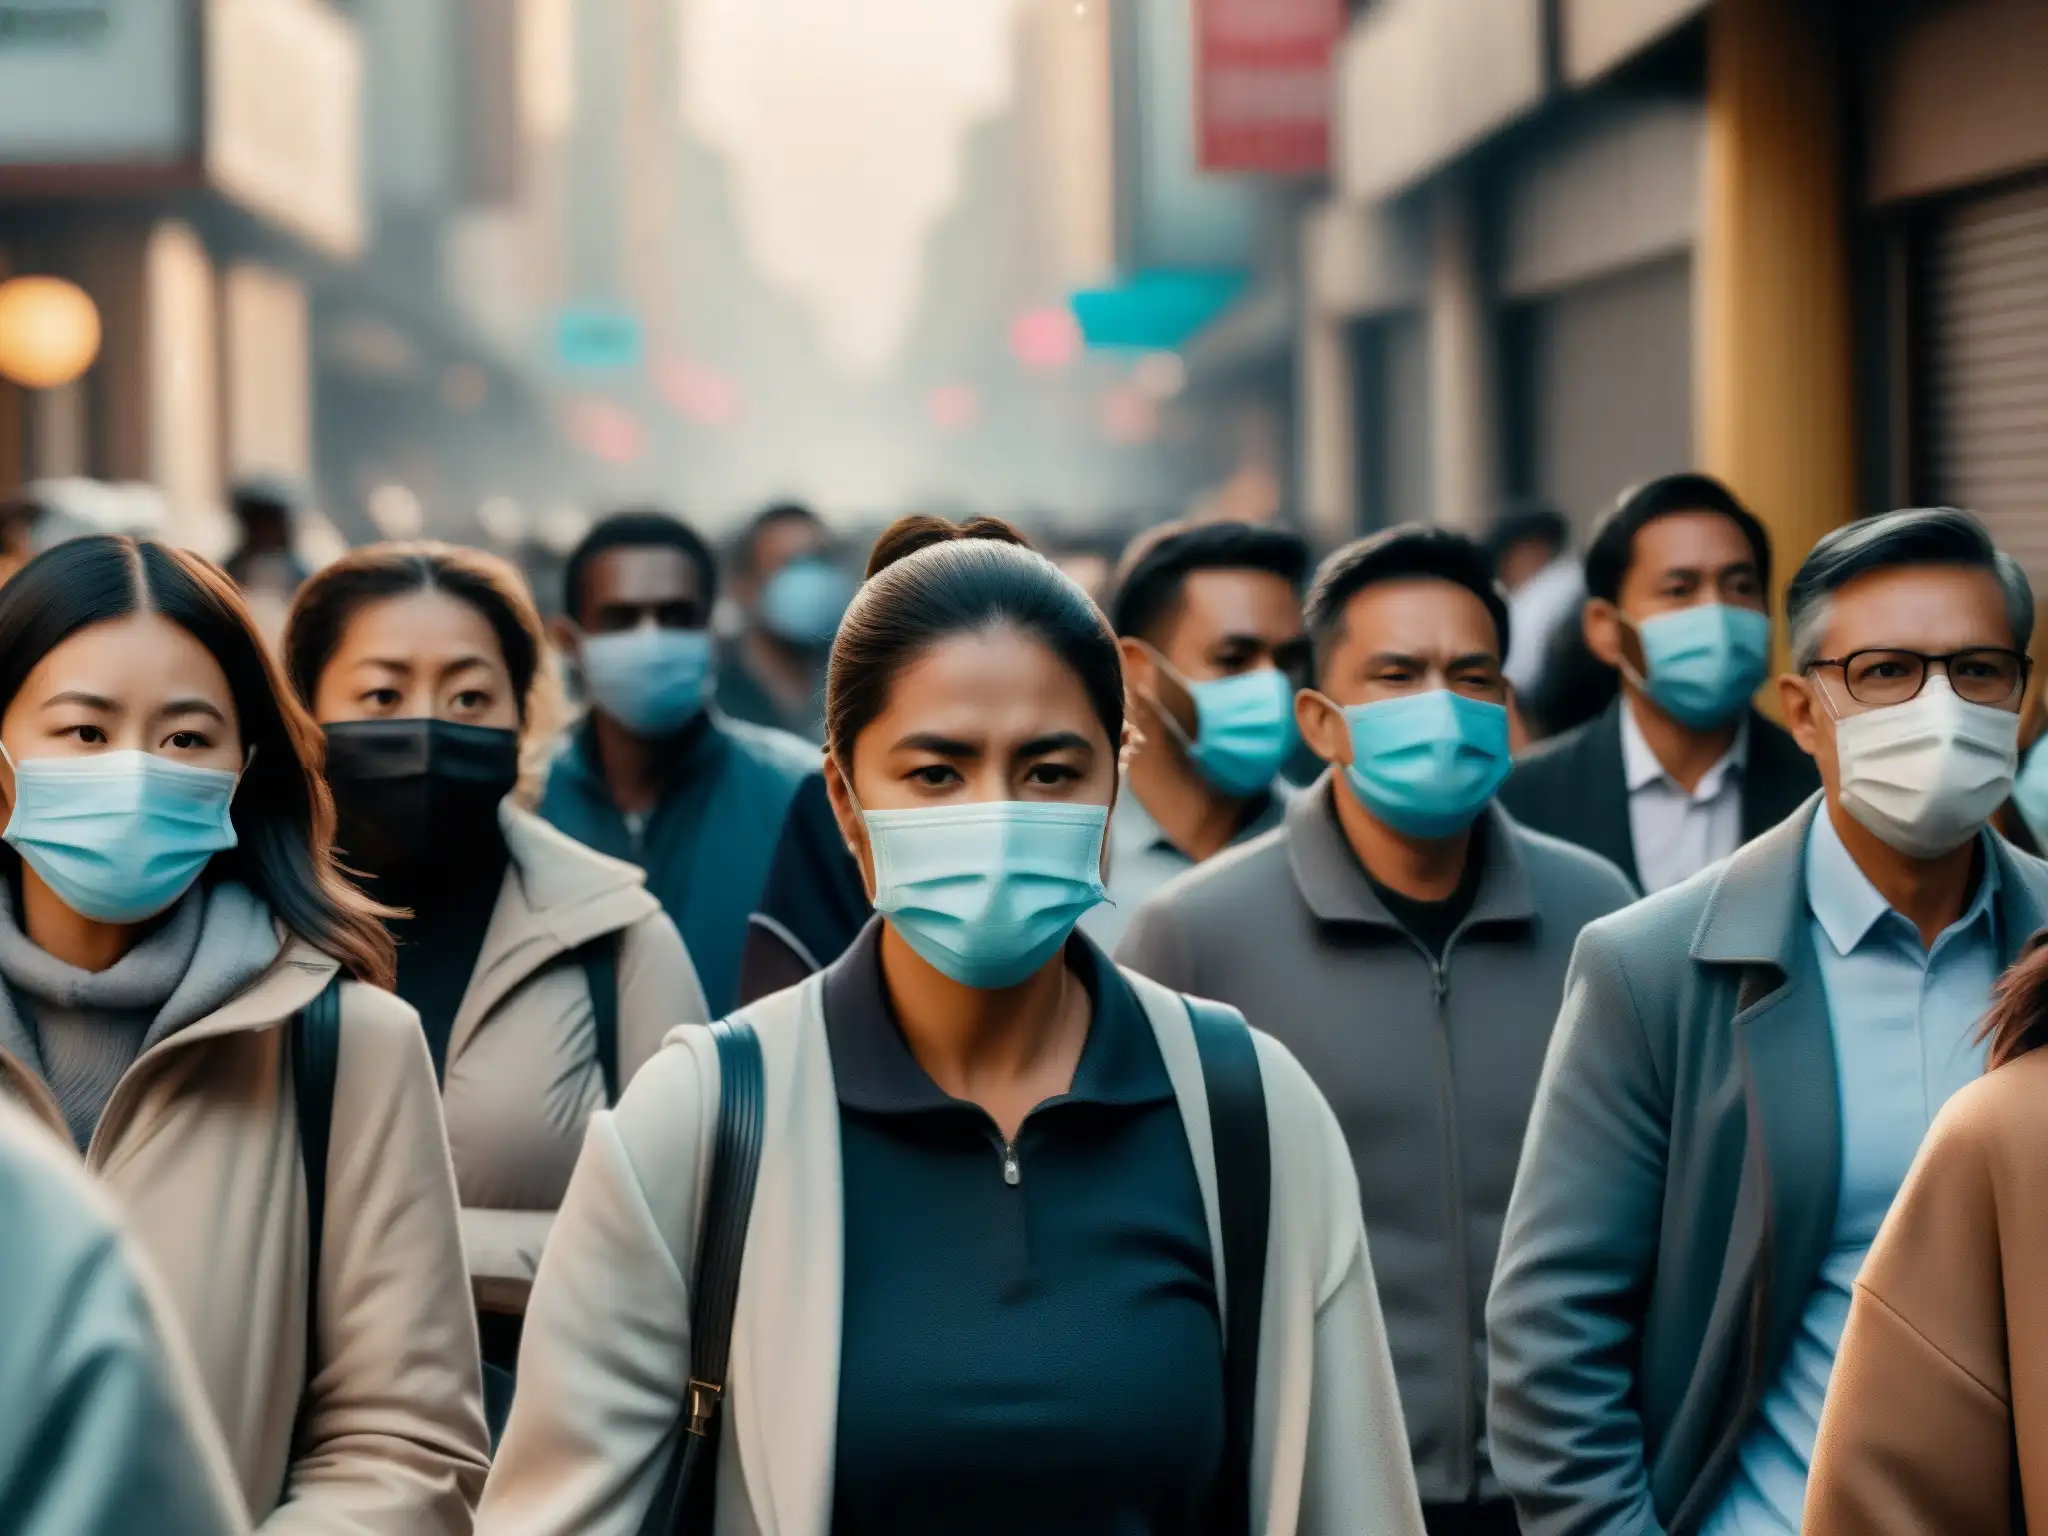 Ambiente urbano tenso con personas usando mascarillas, compartiendo leyendas urbanas sobre la pandemia con impacto en la salud mental